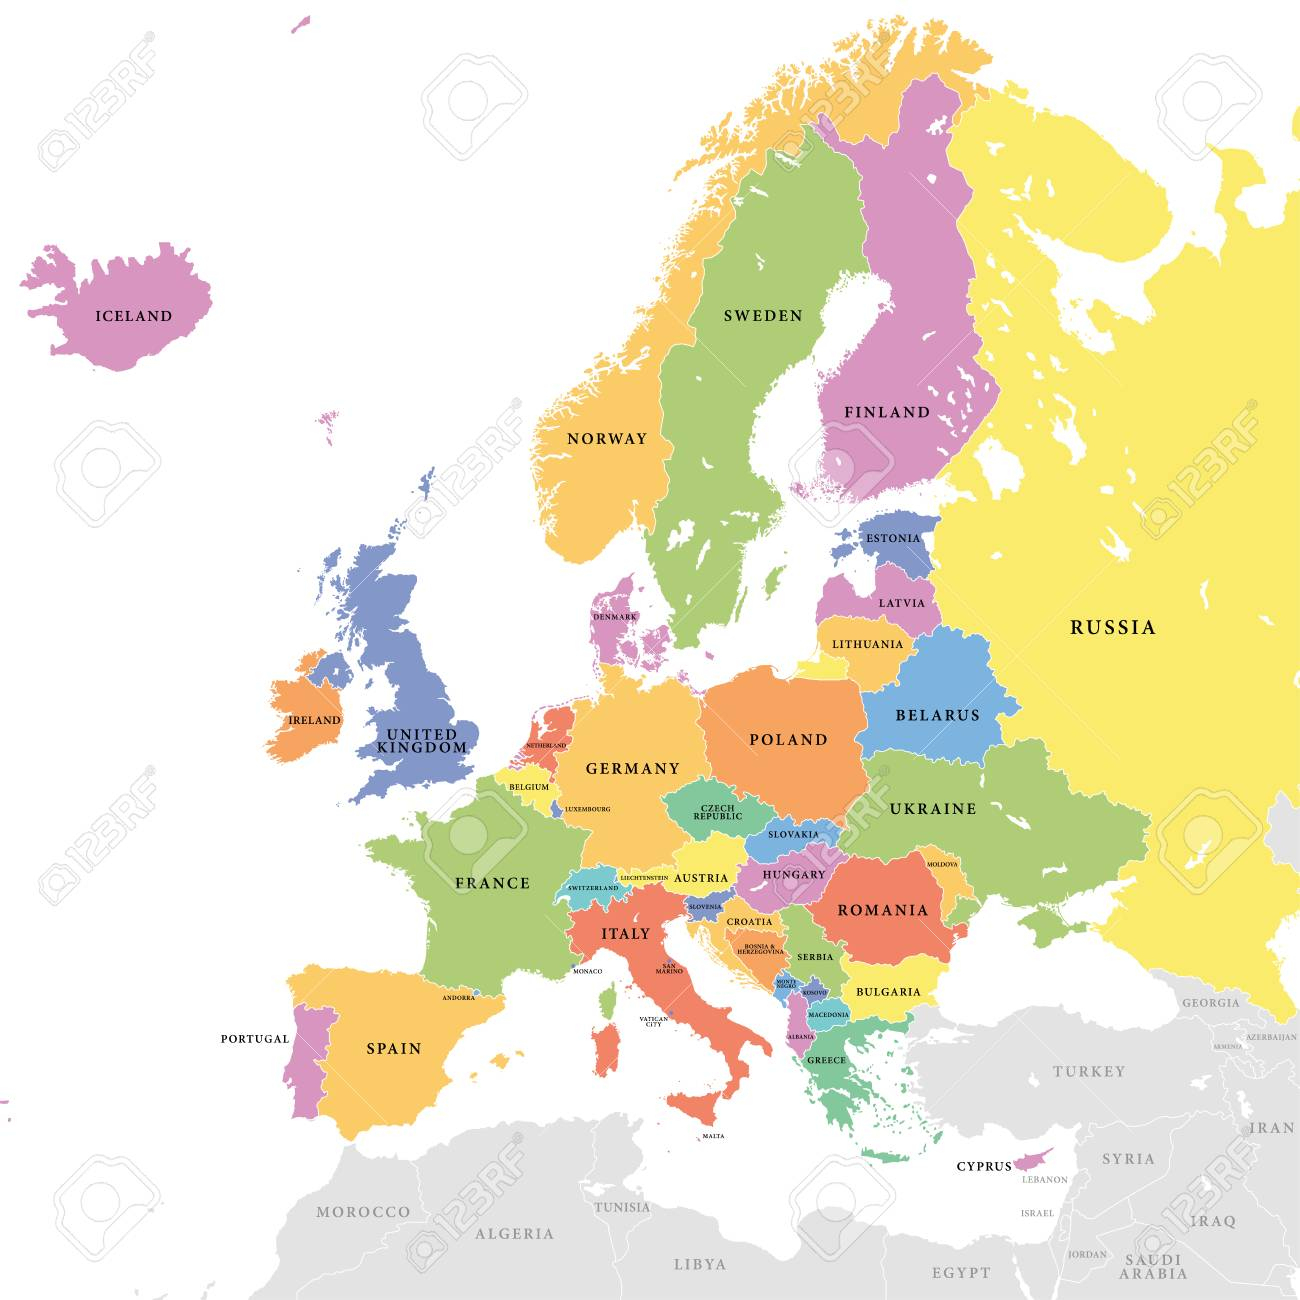 Illustration Vectorielle D&amp;#039;une Carte De L&amp;#039;europe Colorée Avec Les Pays  Européens Colorés Et Les Pays Extraeuropéens Gris à Carte De L Europe Avec Pays 